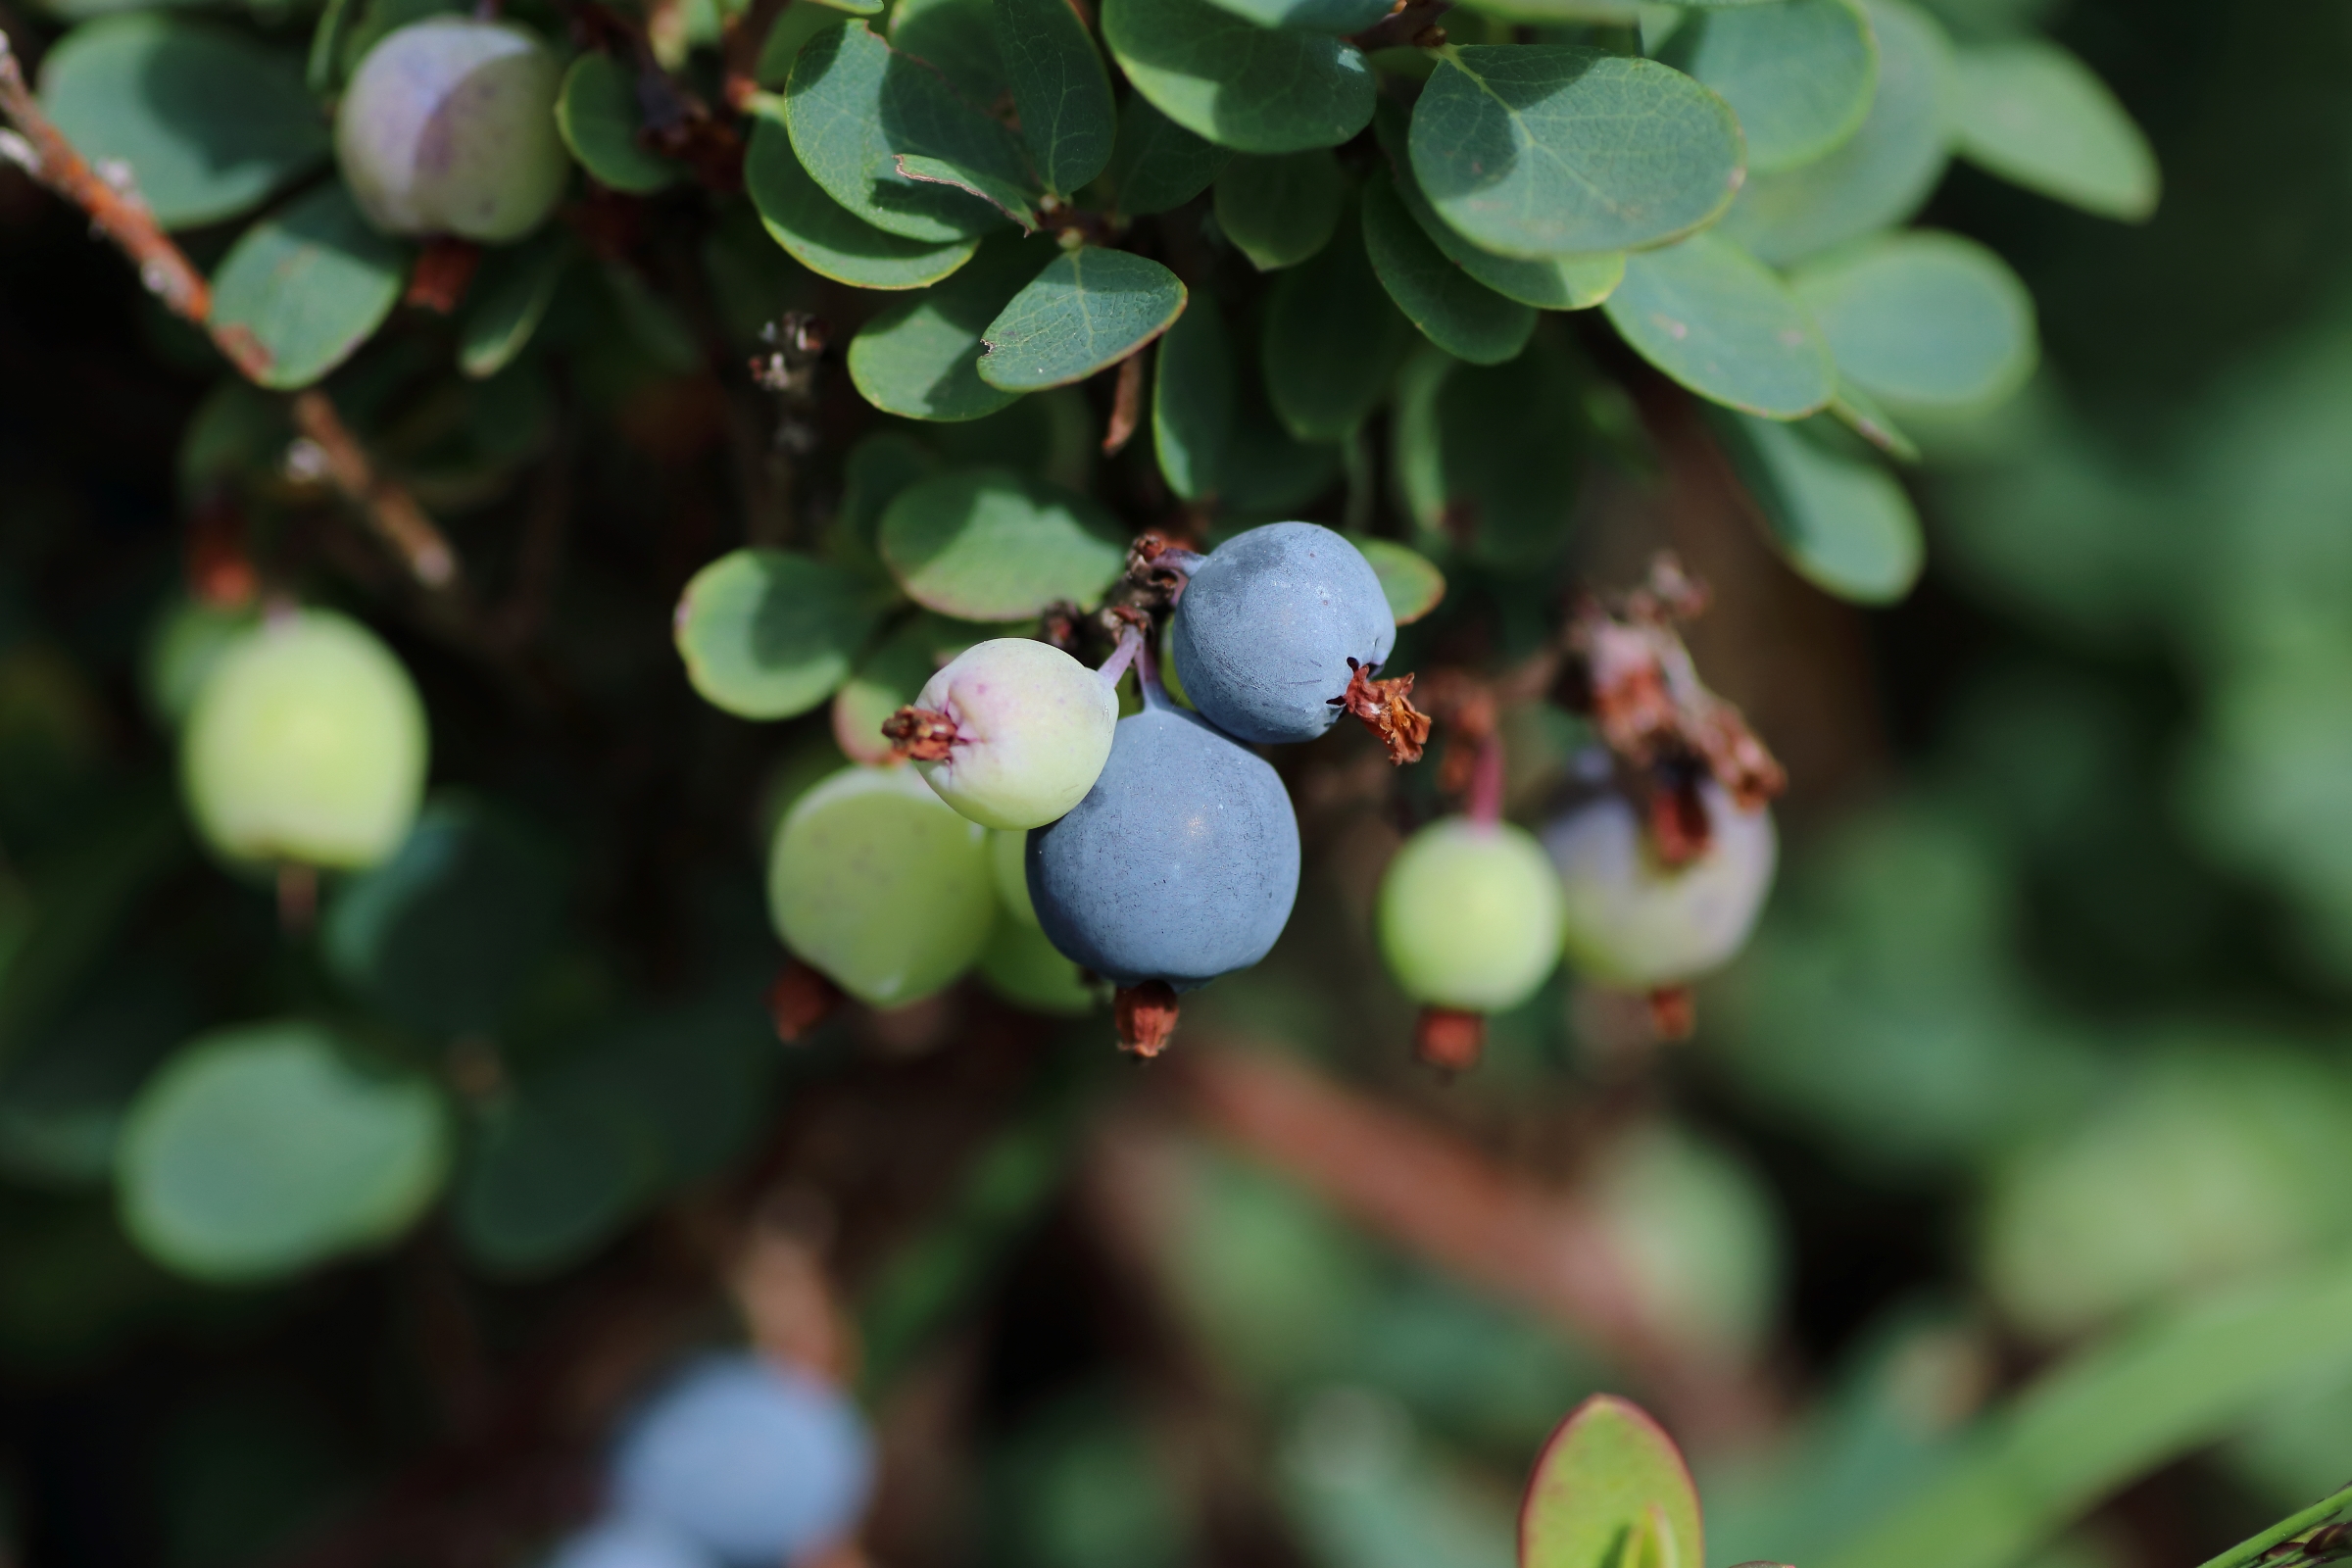 Detailaufnahme der Früchte der Moor-Rauschbeere - blaue, rundlich aufgebaute Früchte